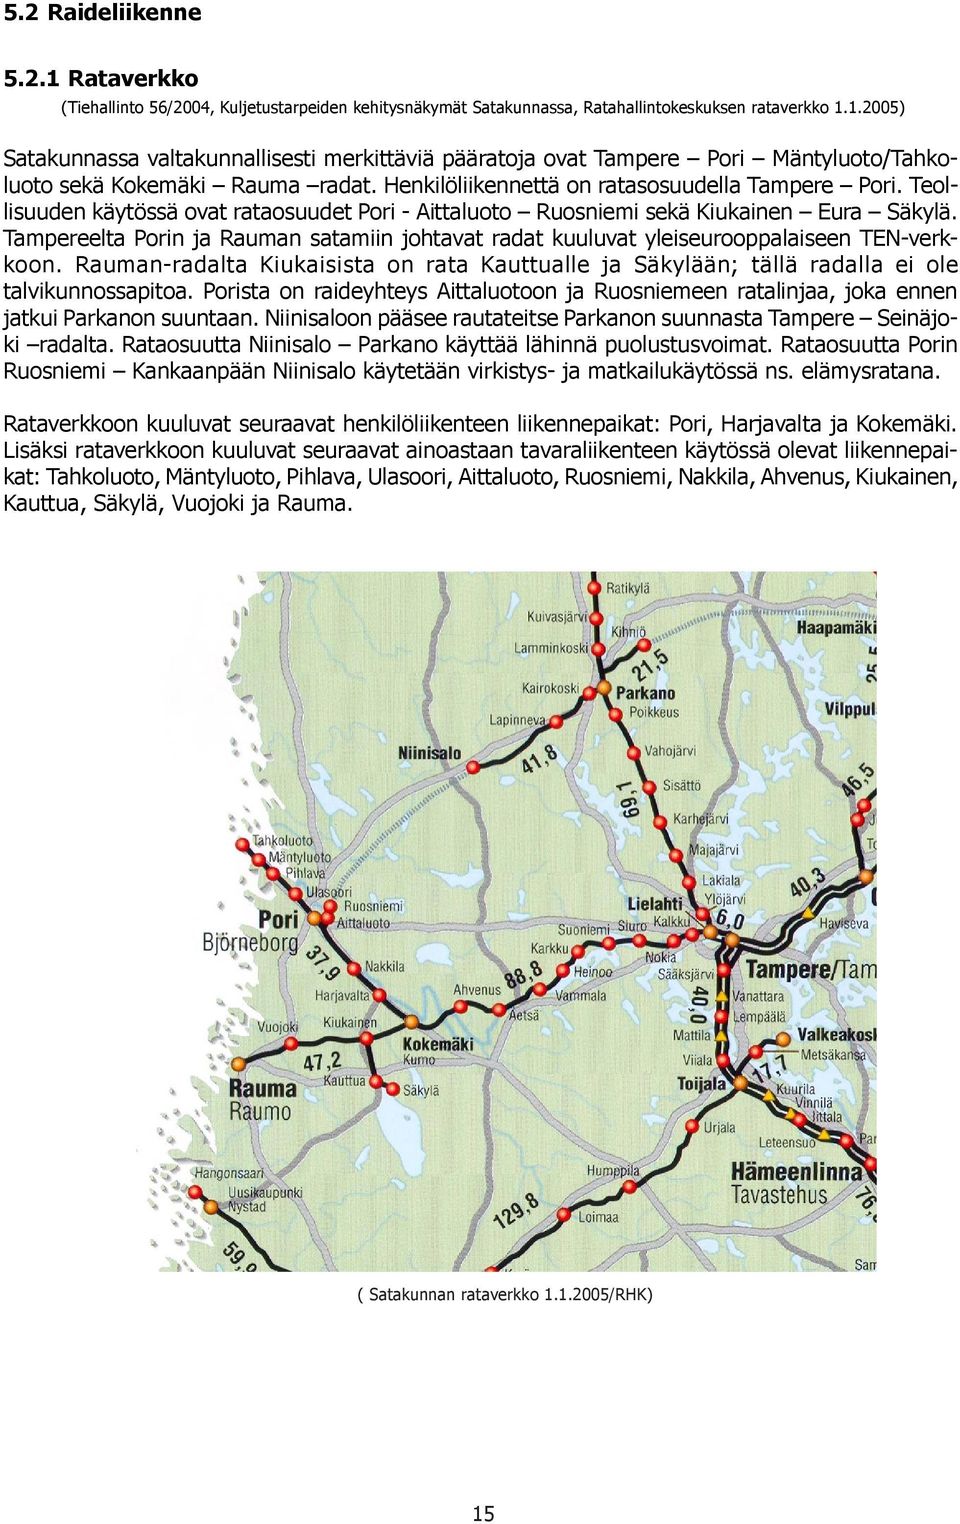 Tampereelta Porin ja Rauman satamiin johtavat radat kuuluvat yleiseurooppalaiseen TEN-verkkoon. Rauman-radalta Kiukaisia on rata Kauttualle ja Säkylään; tällä radalla ei ole talvikunnossapitoa.